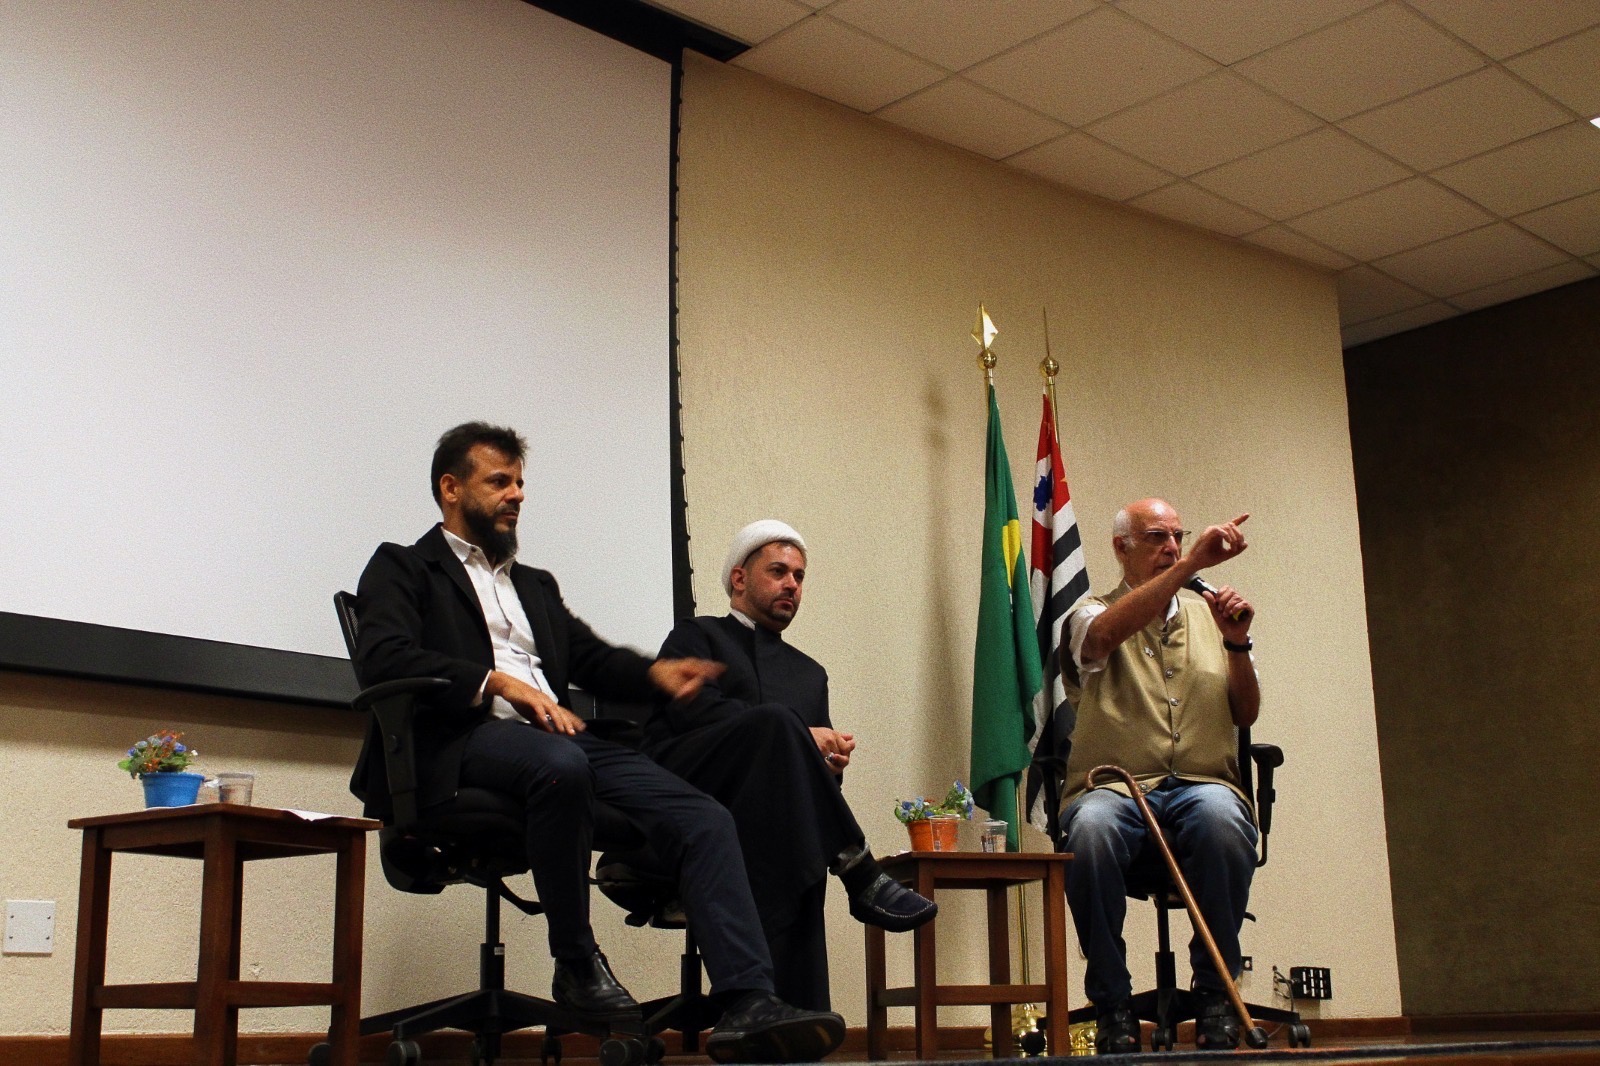 Pe. Leomar, Pe. Júlio Lancellotti e o Sheik Rodrigo Jalloul em cima do palco no auditório do UNIFAI. Pe. Júlio fala ao microfone.